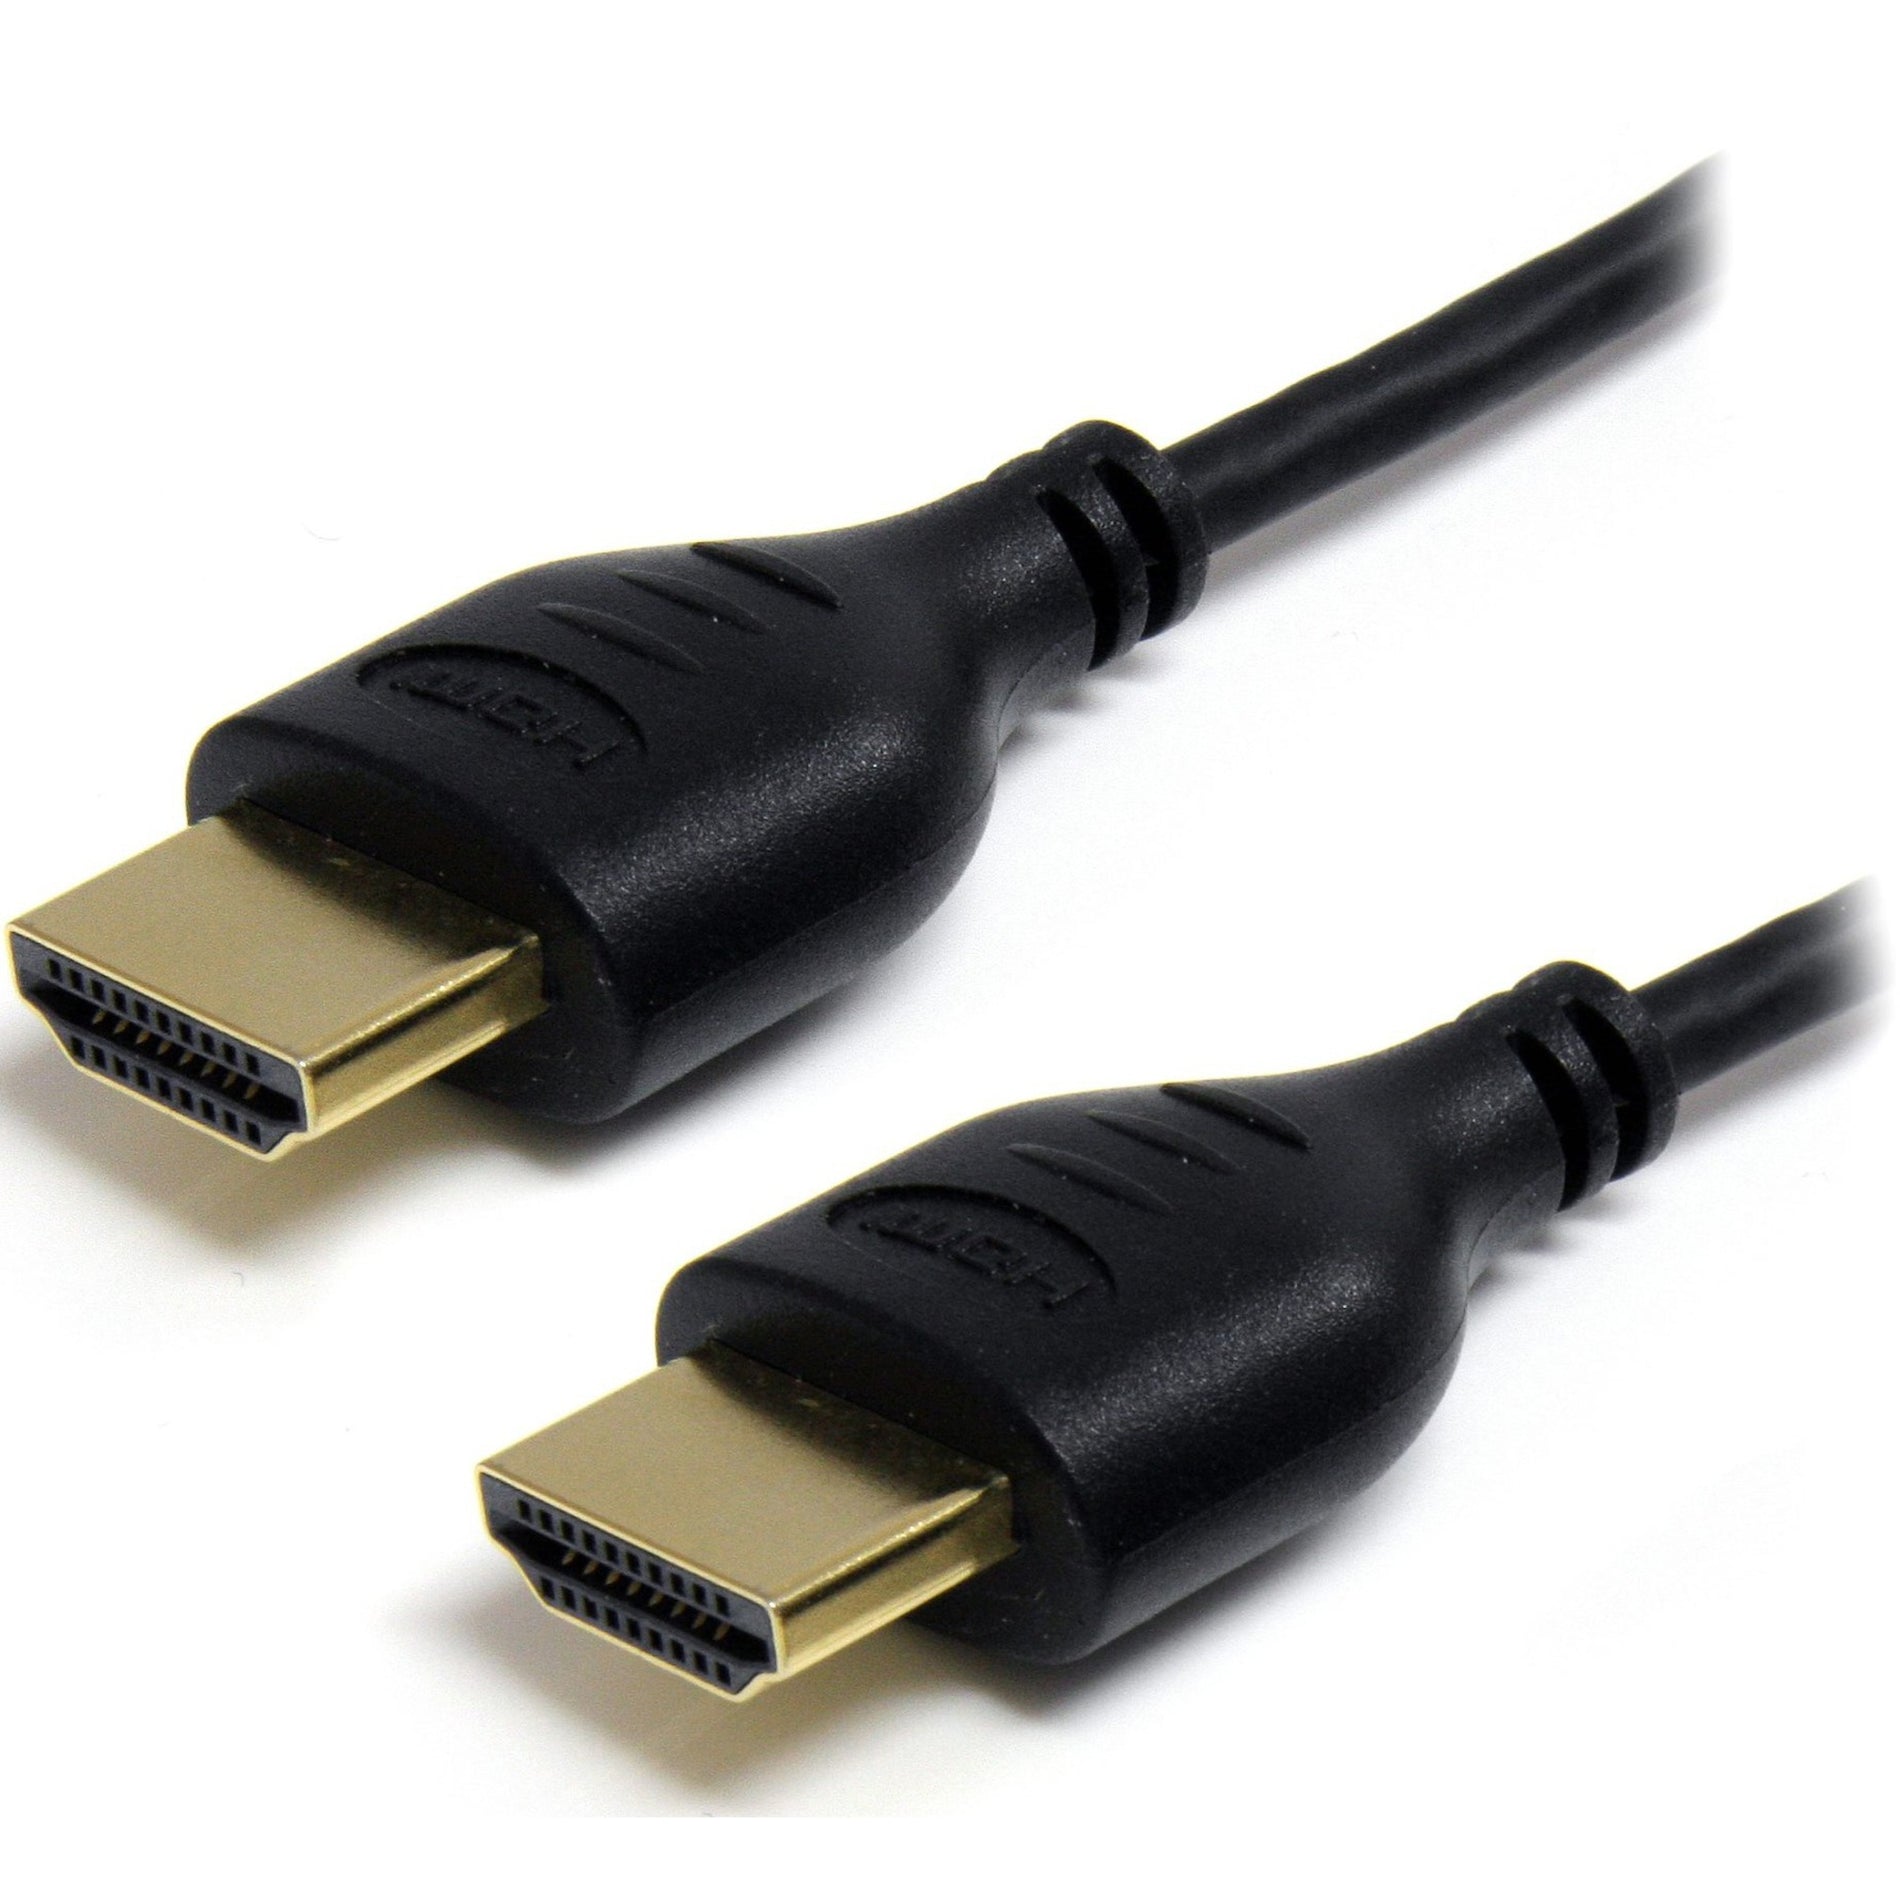 StarTech.com Cable de vídeo digital HDMI delgado de alta velocidad HDMIMM3HSS de 3 pies con Ethernet - M/M flexible resistente a la corrosión resolución admitida de 4096 x 2160.